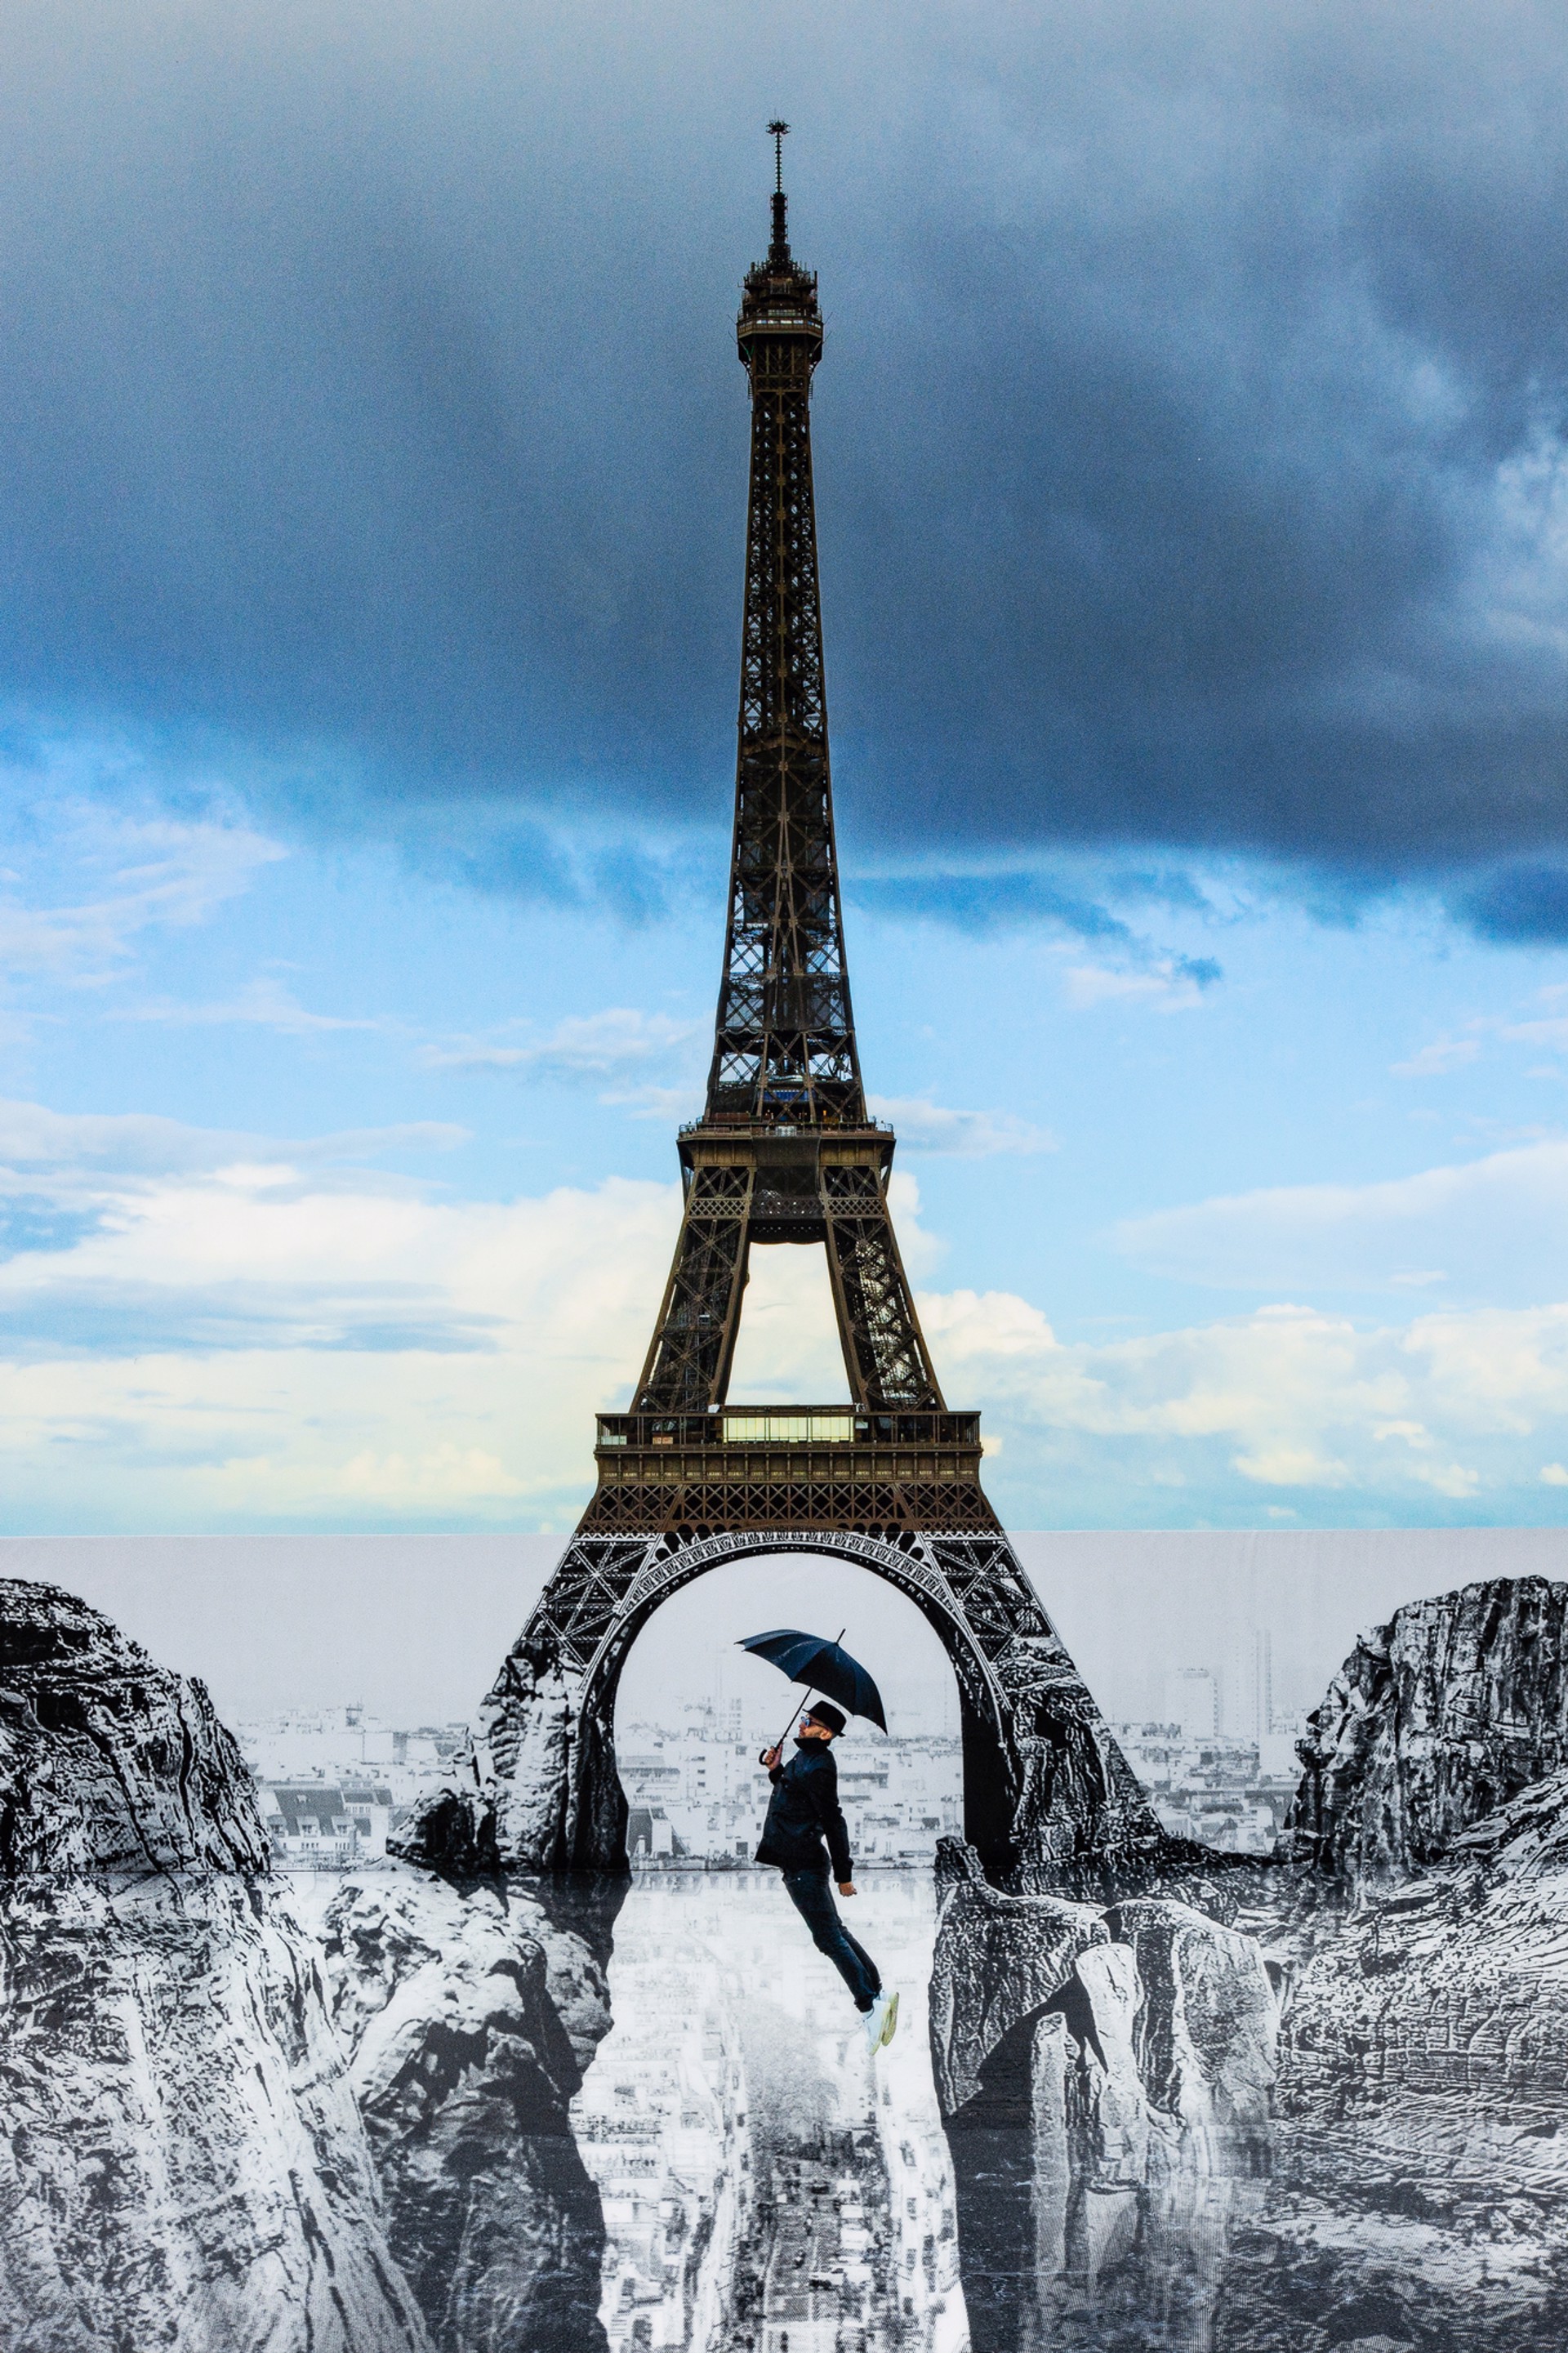 Trompe l'oeil, Les Falaises du Trocadéro, 18 mai 2021, 19h58, Paris, France, 2021 by JR